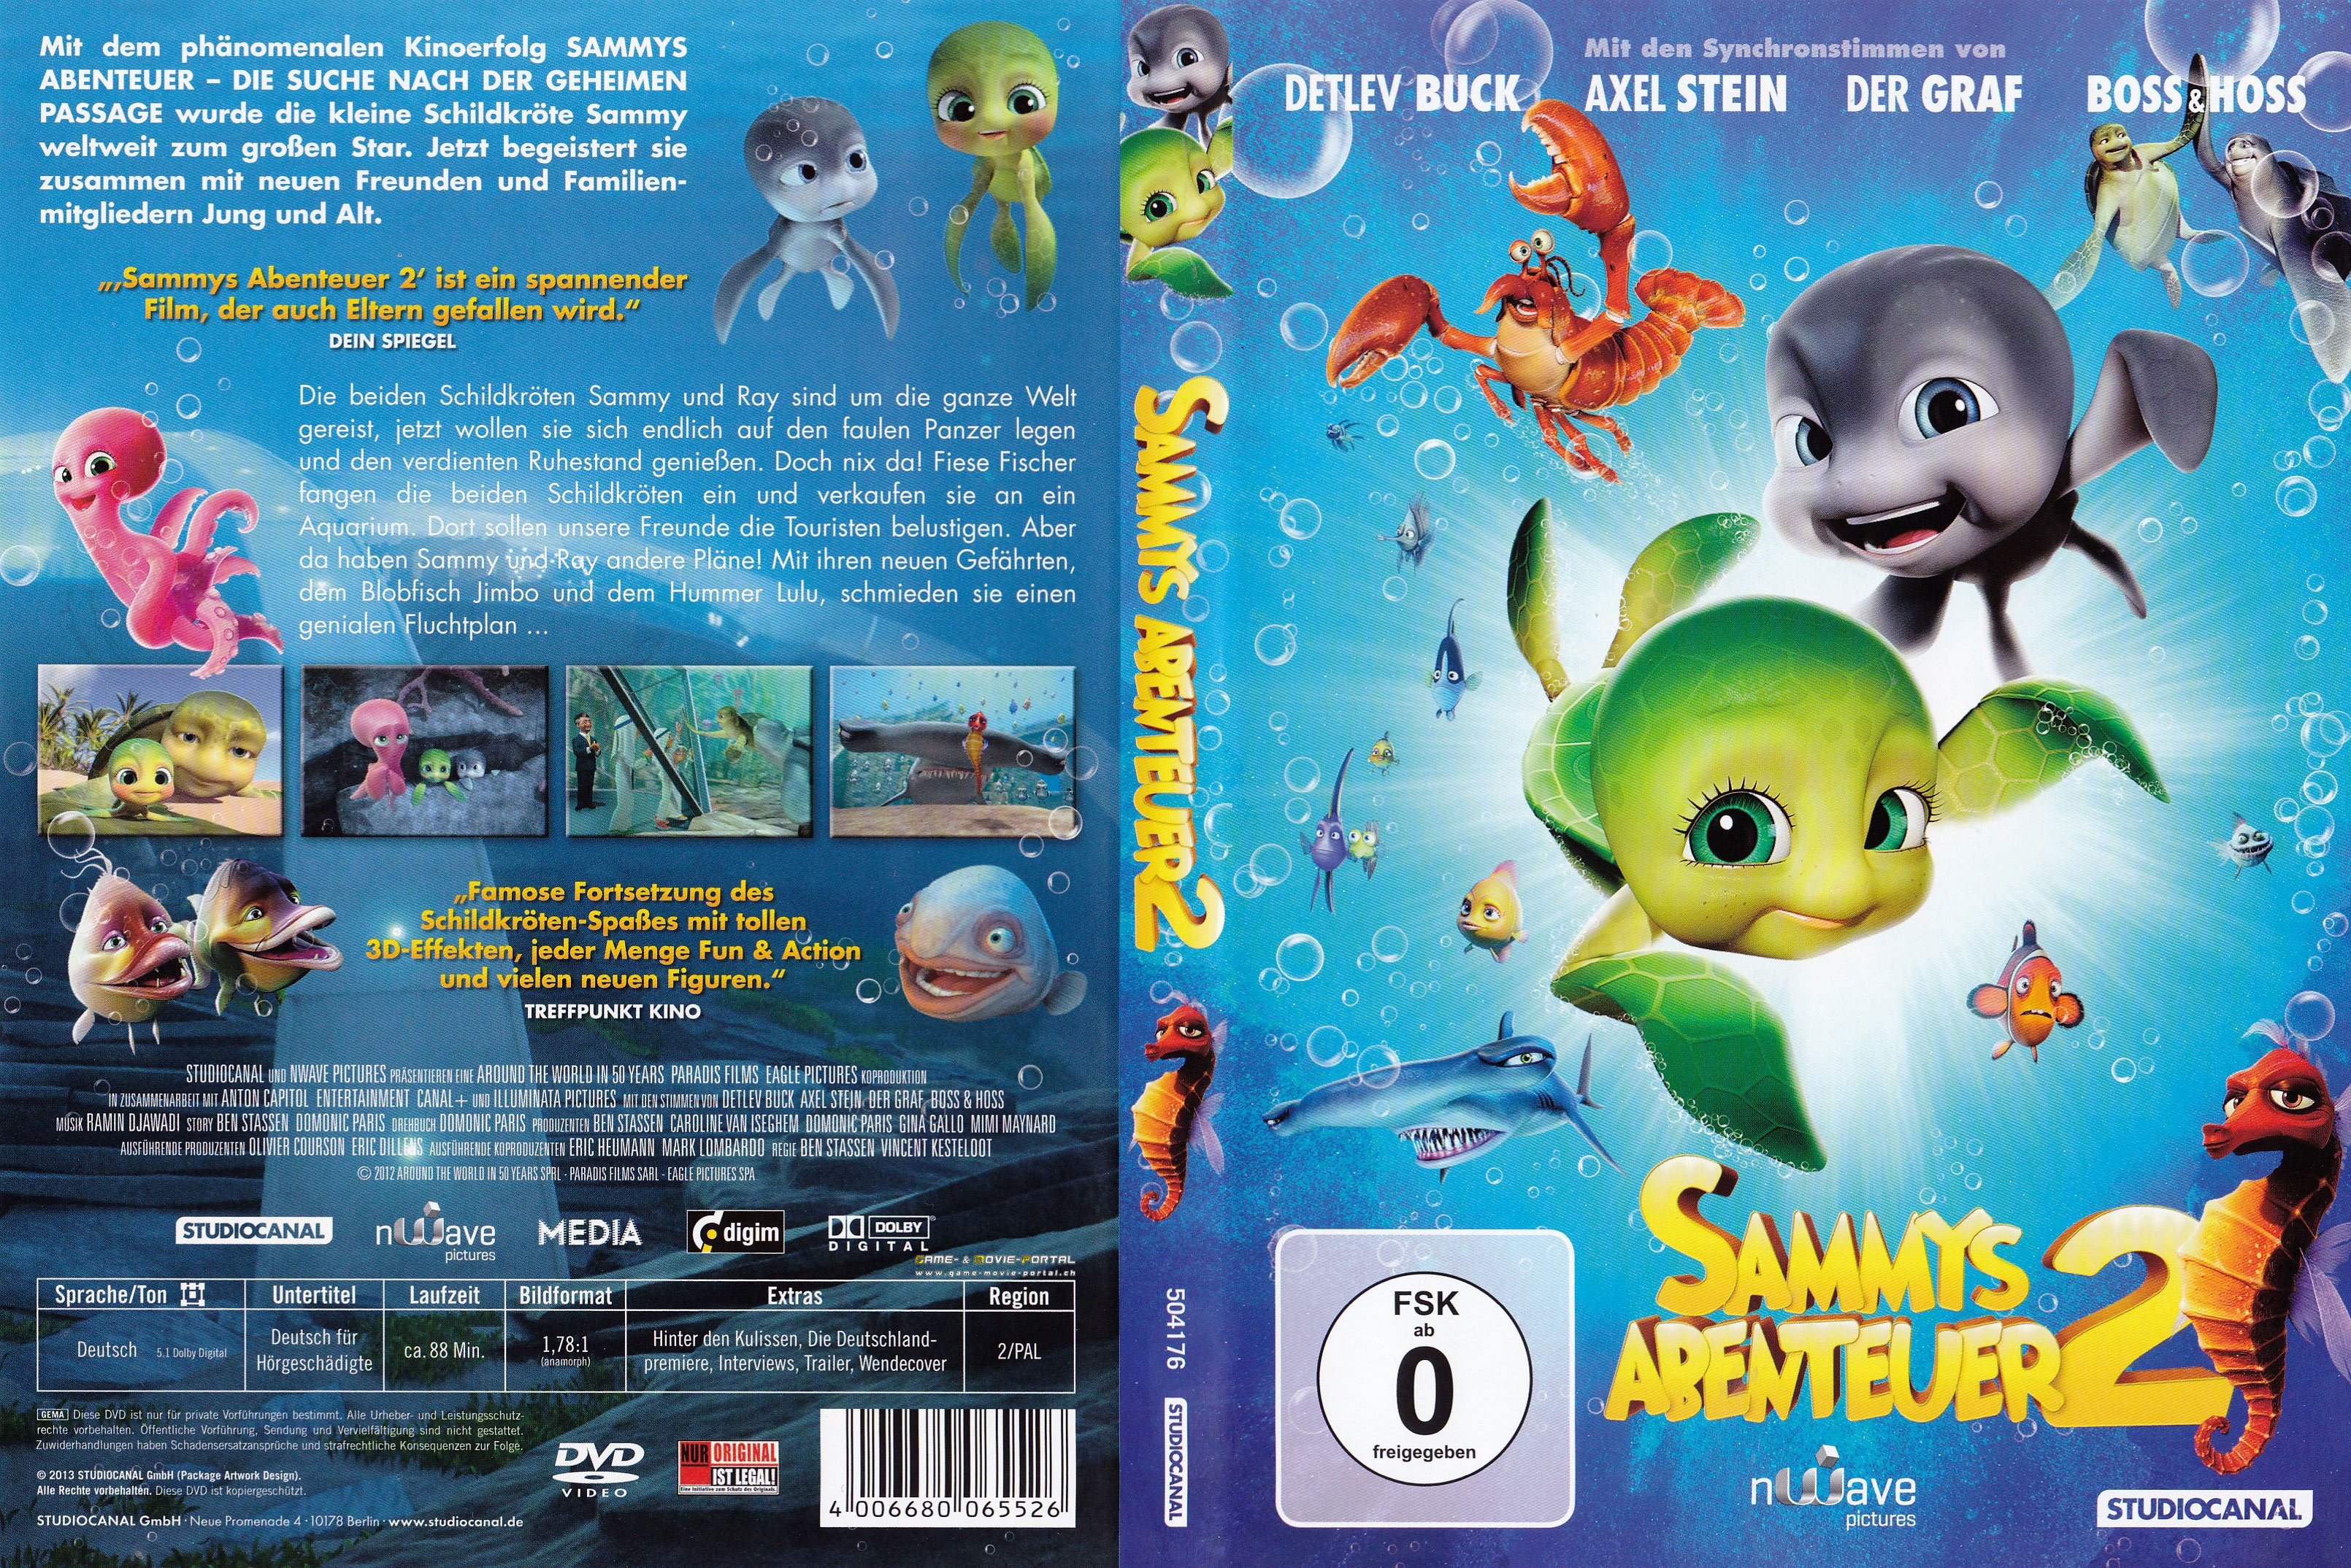 Sammys Abenteuer 2 dvd cover german